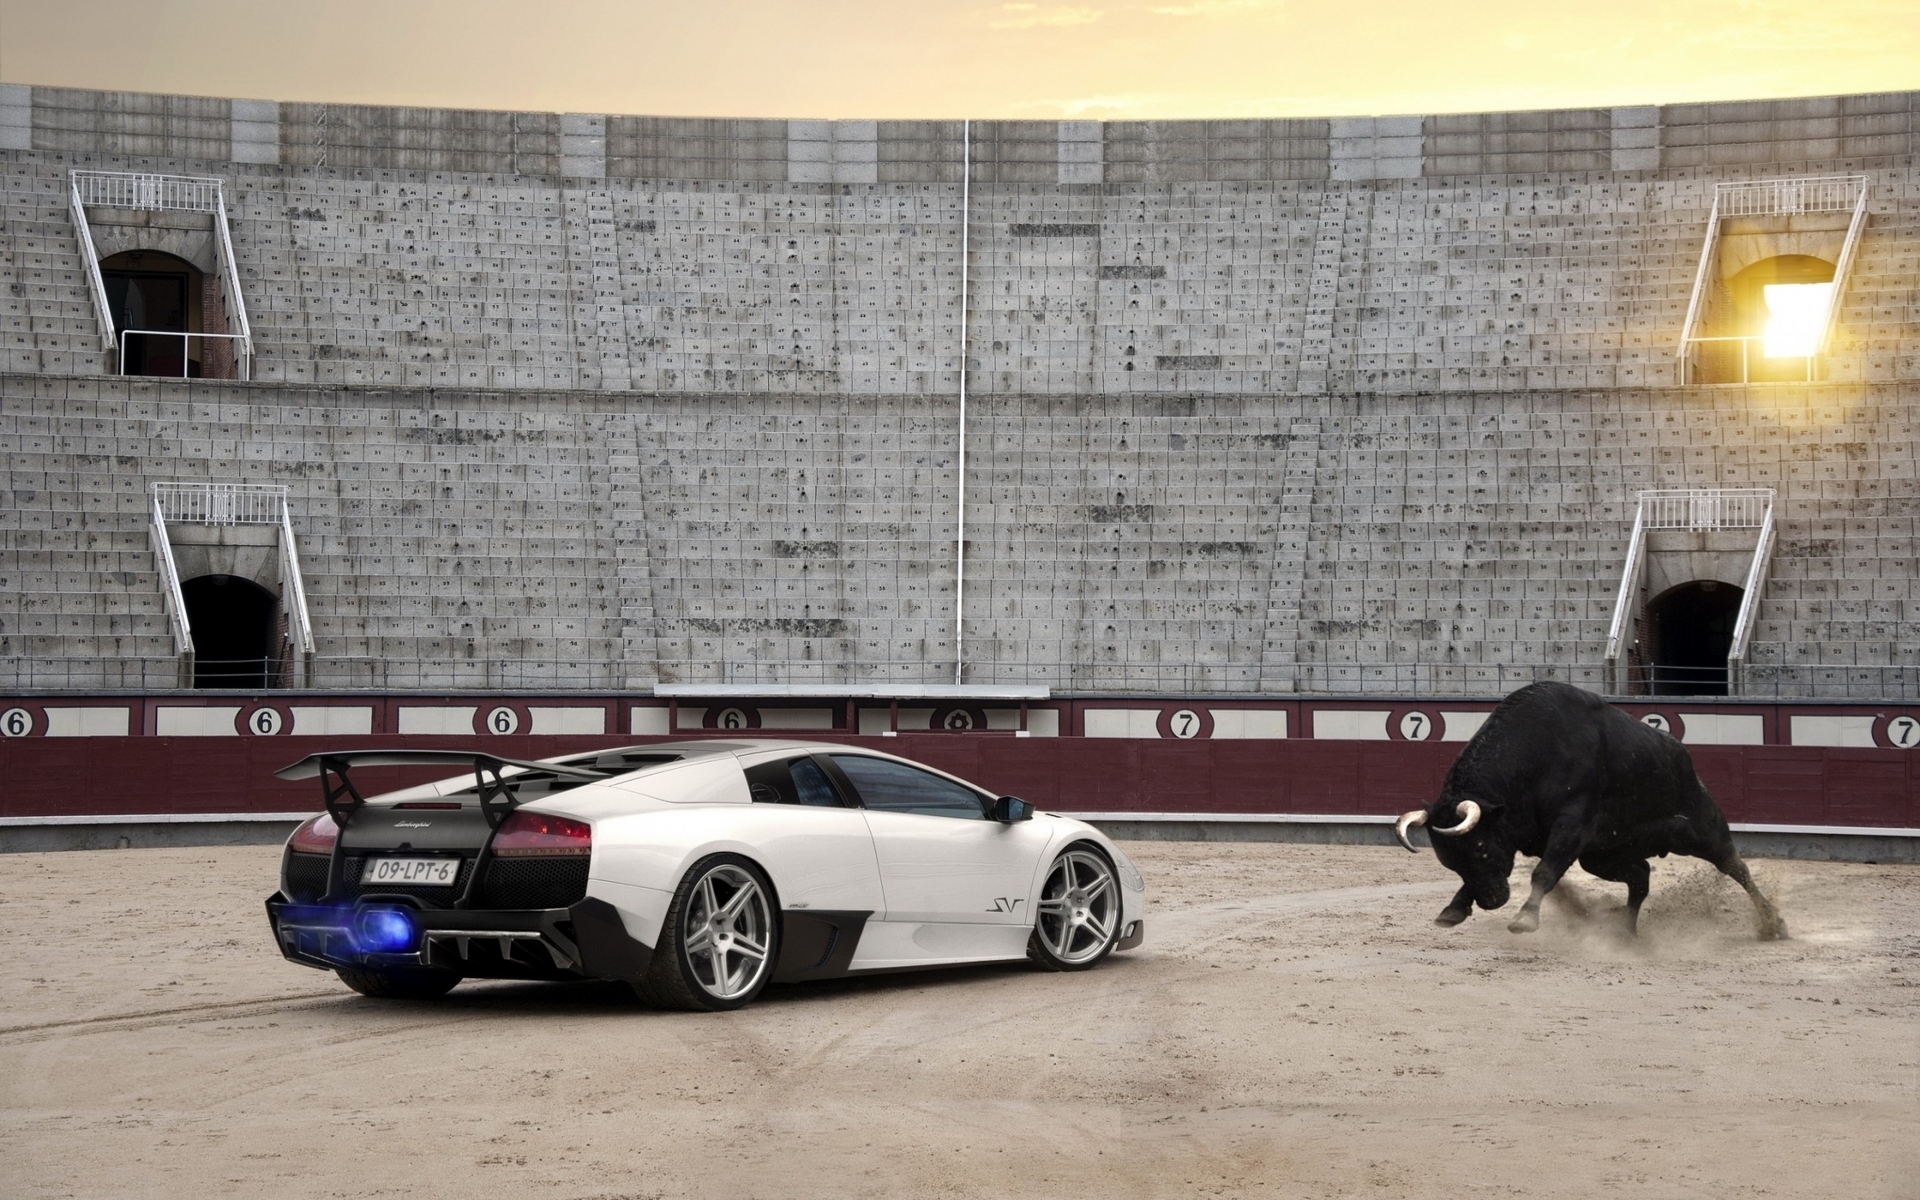 Картинка: Суперкар, Lamborghini, murcielago, lp670-4, sv, буйвол, битва, сражение, арена